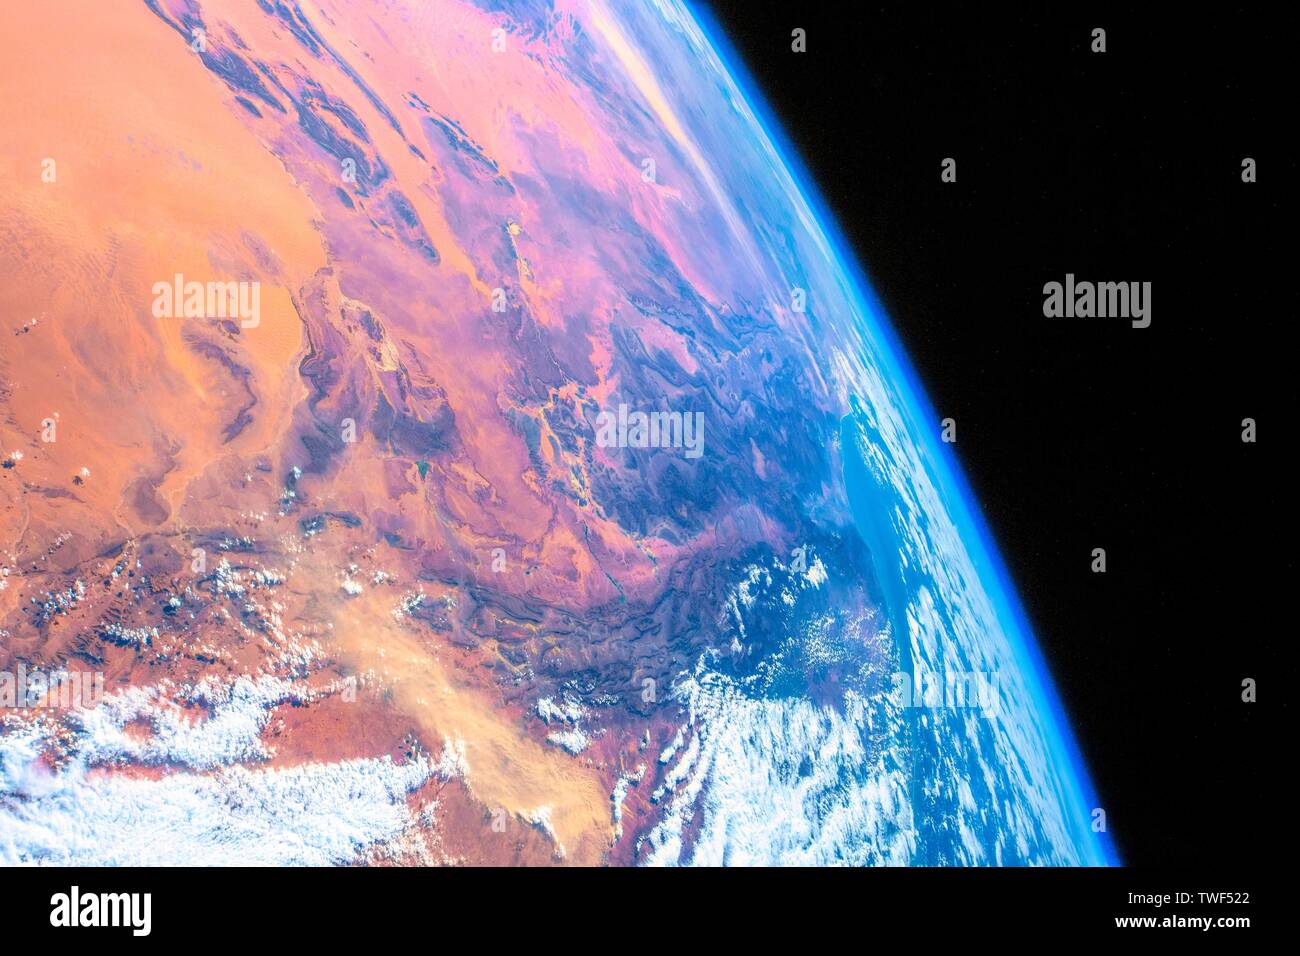 Au cours de l'Algérie. La beauté dans la nature de notre planète Terre vue de la Station spatiale internationale (ISS). L'image est un domaine public de l'élève par la NASA. Banque D'Images